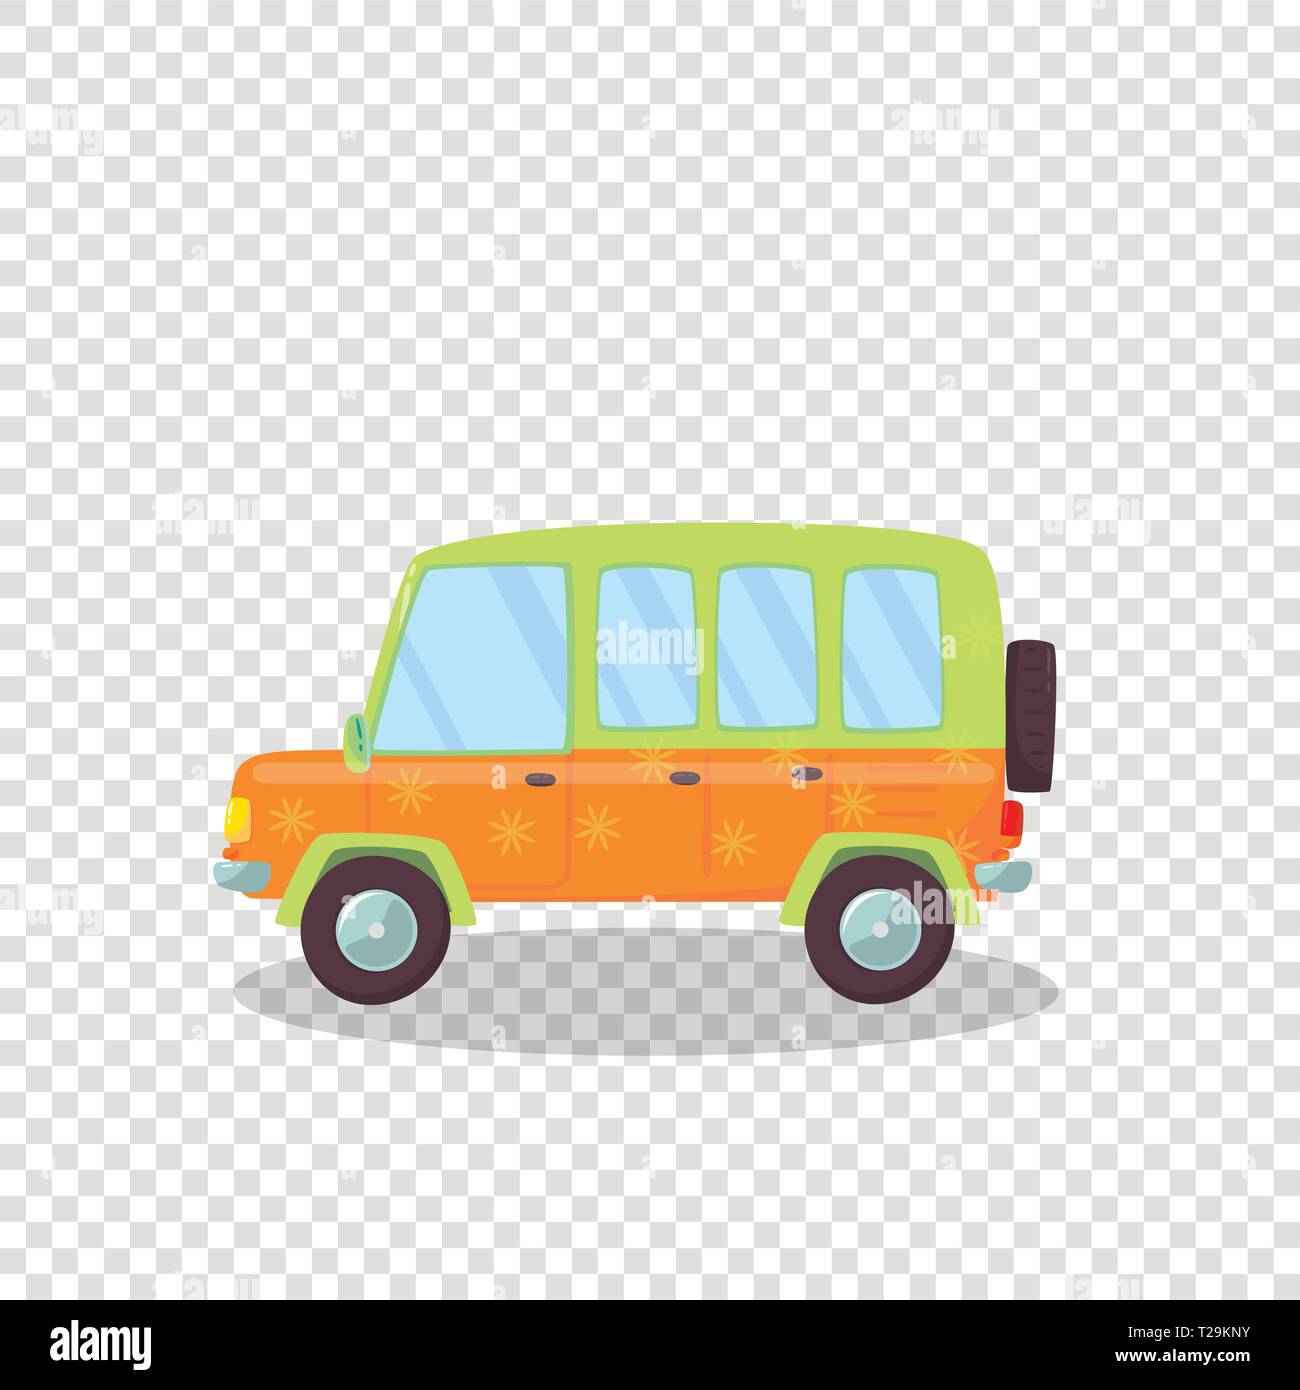 Nettes Auto mit Blumen Ornament und Reserverad isoliert auf Transparenten Hintergrund. Seitenansicht der Limousine oder Coupé Auto für Familie Reisen. Ca Stock Vektor